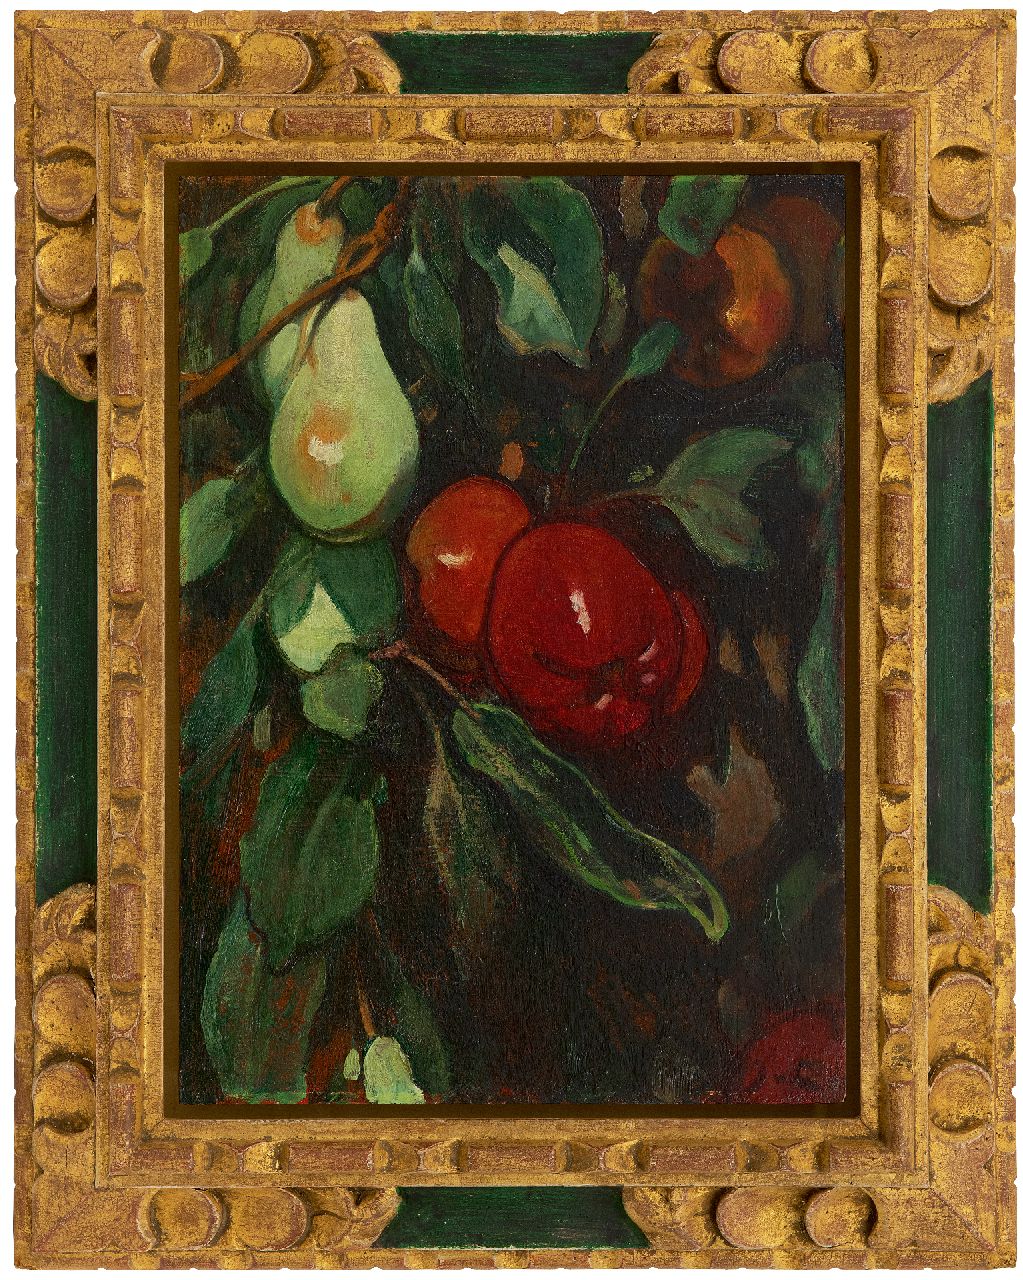 Looy J. van | Jacobus van Looy | Schilderijen te koop aangeboden | Rode appels en peren, olieverf op paneel 37,0 x 26,7 cm, gesigneerd rechtsonder met initialen